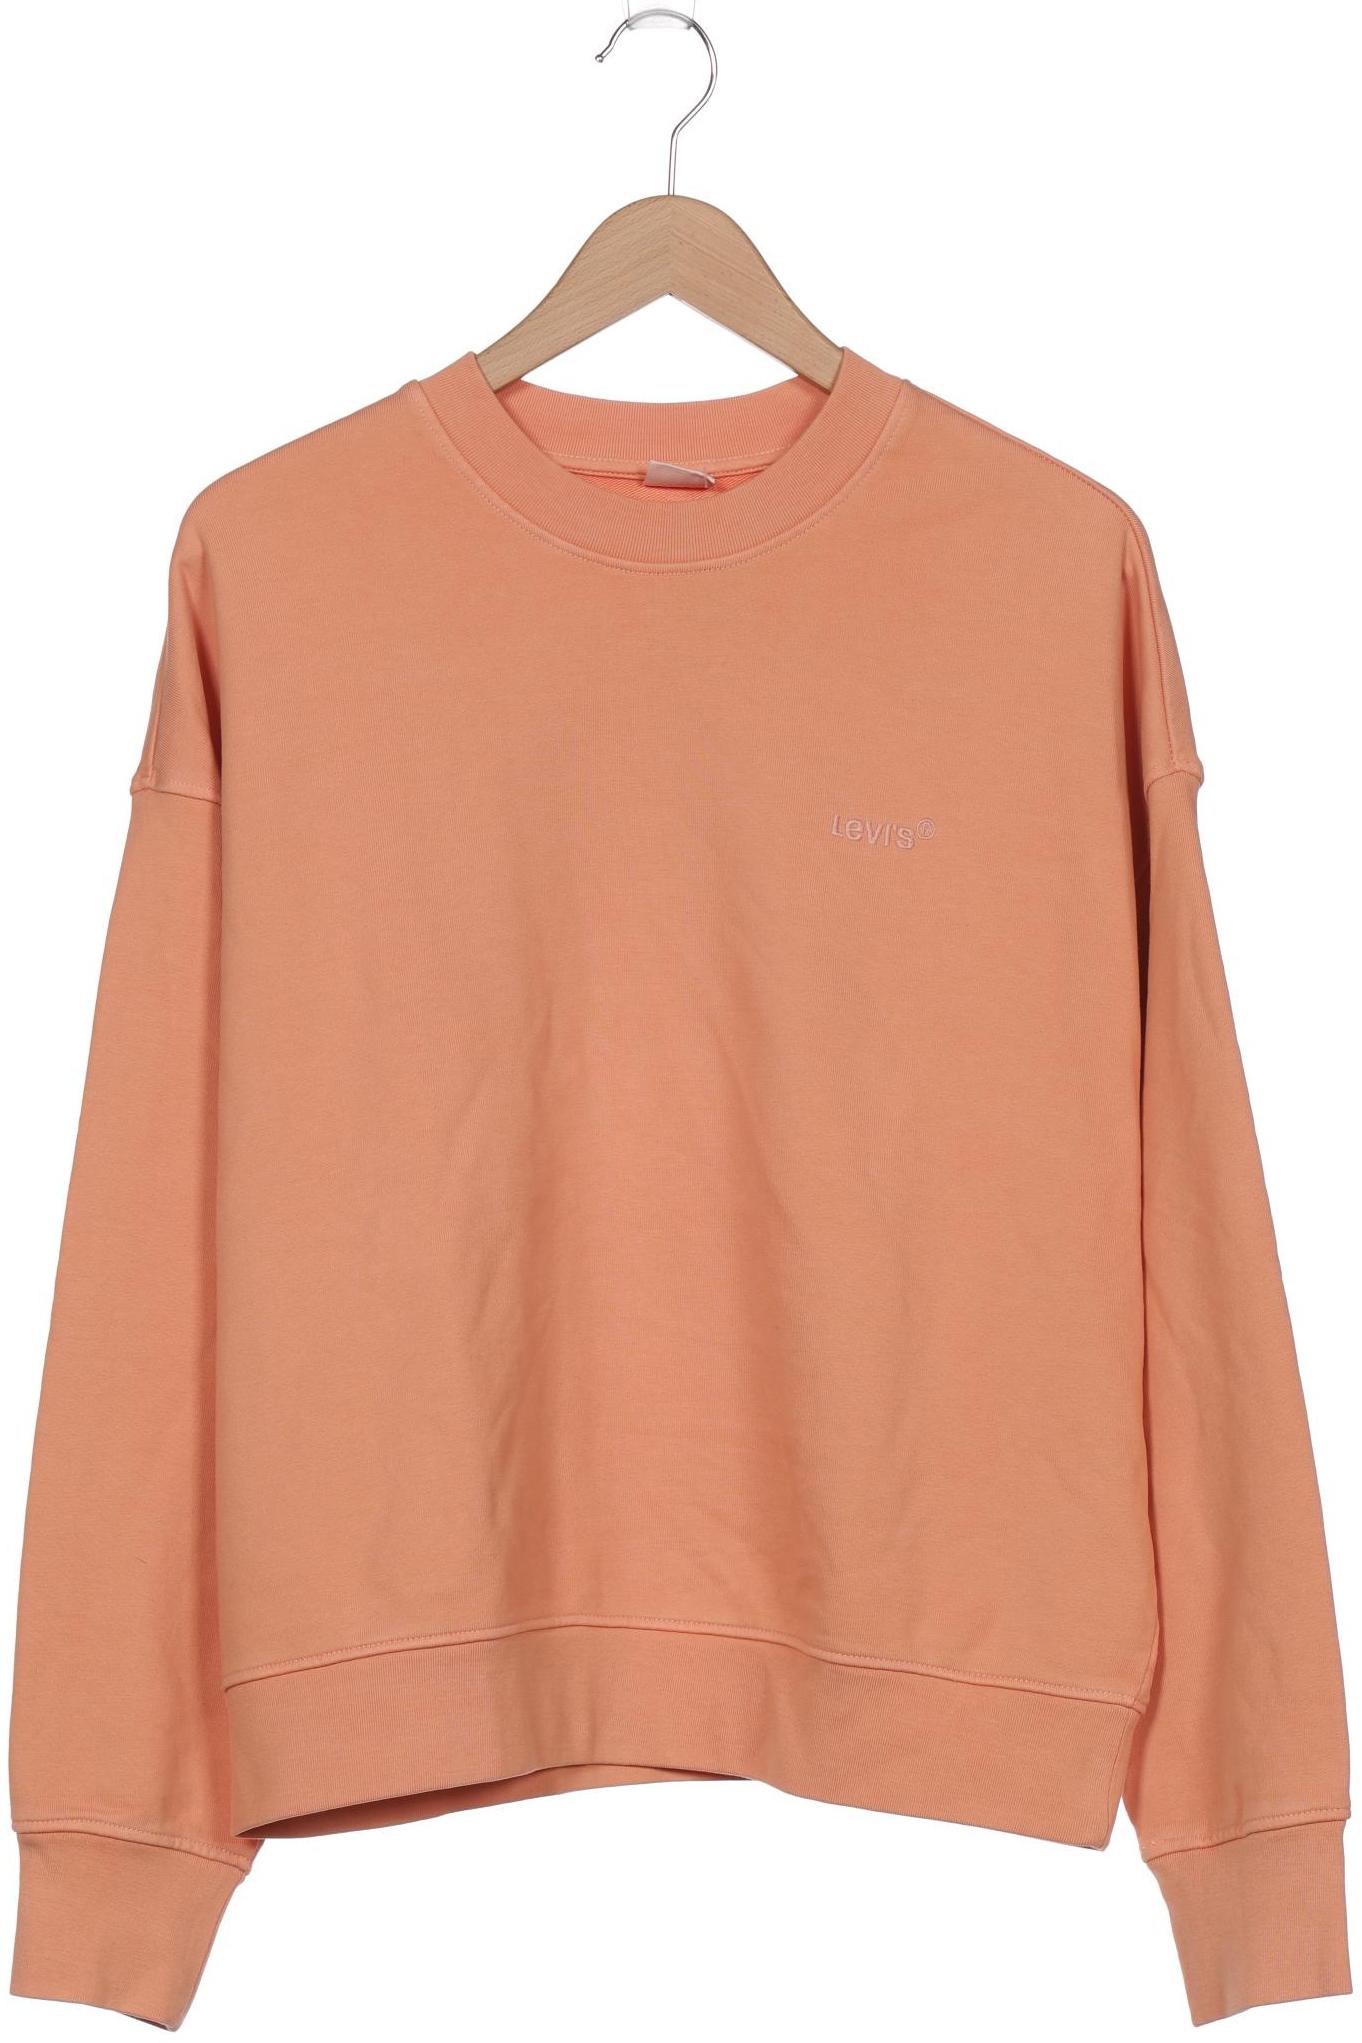 Levis Damen Sweatshirt, orange von Levis